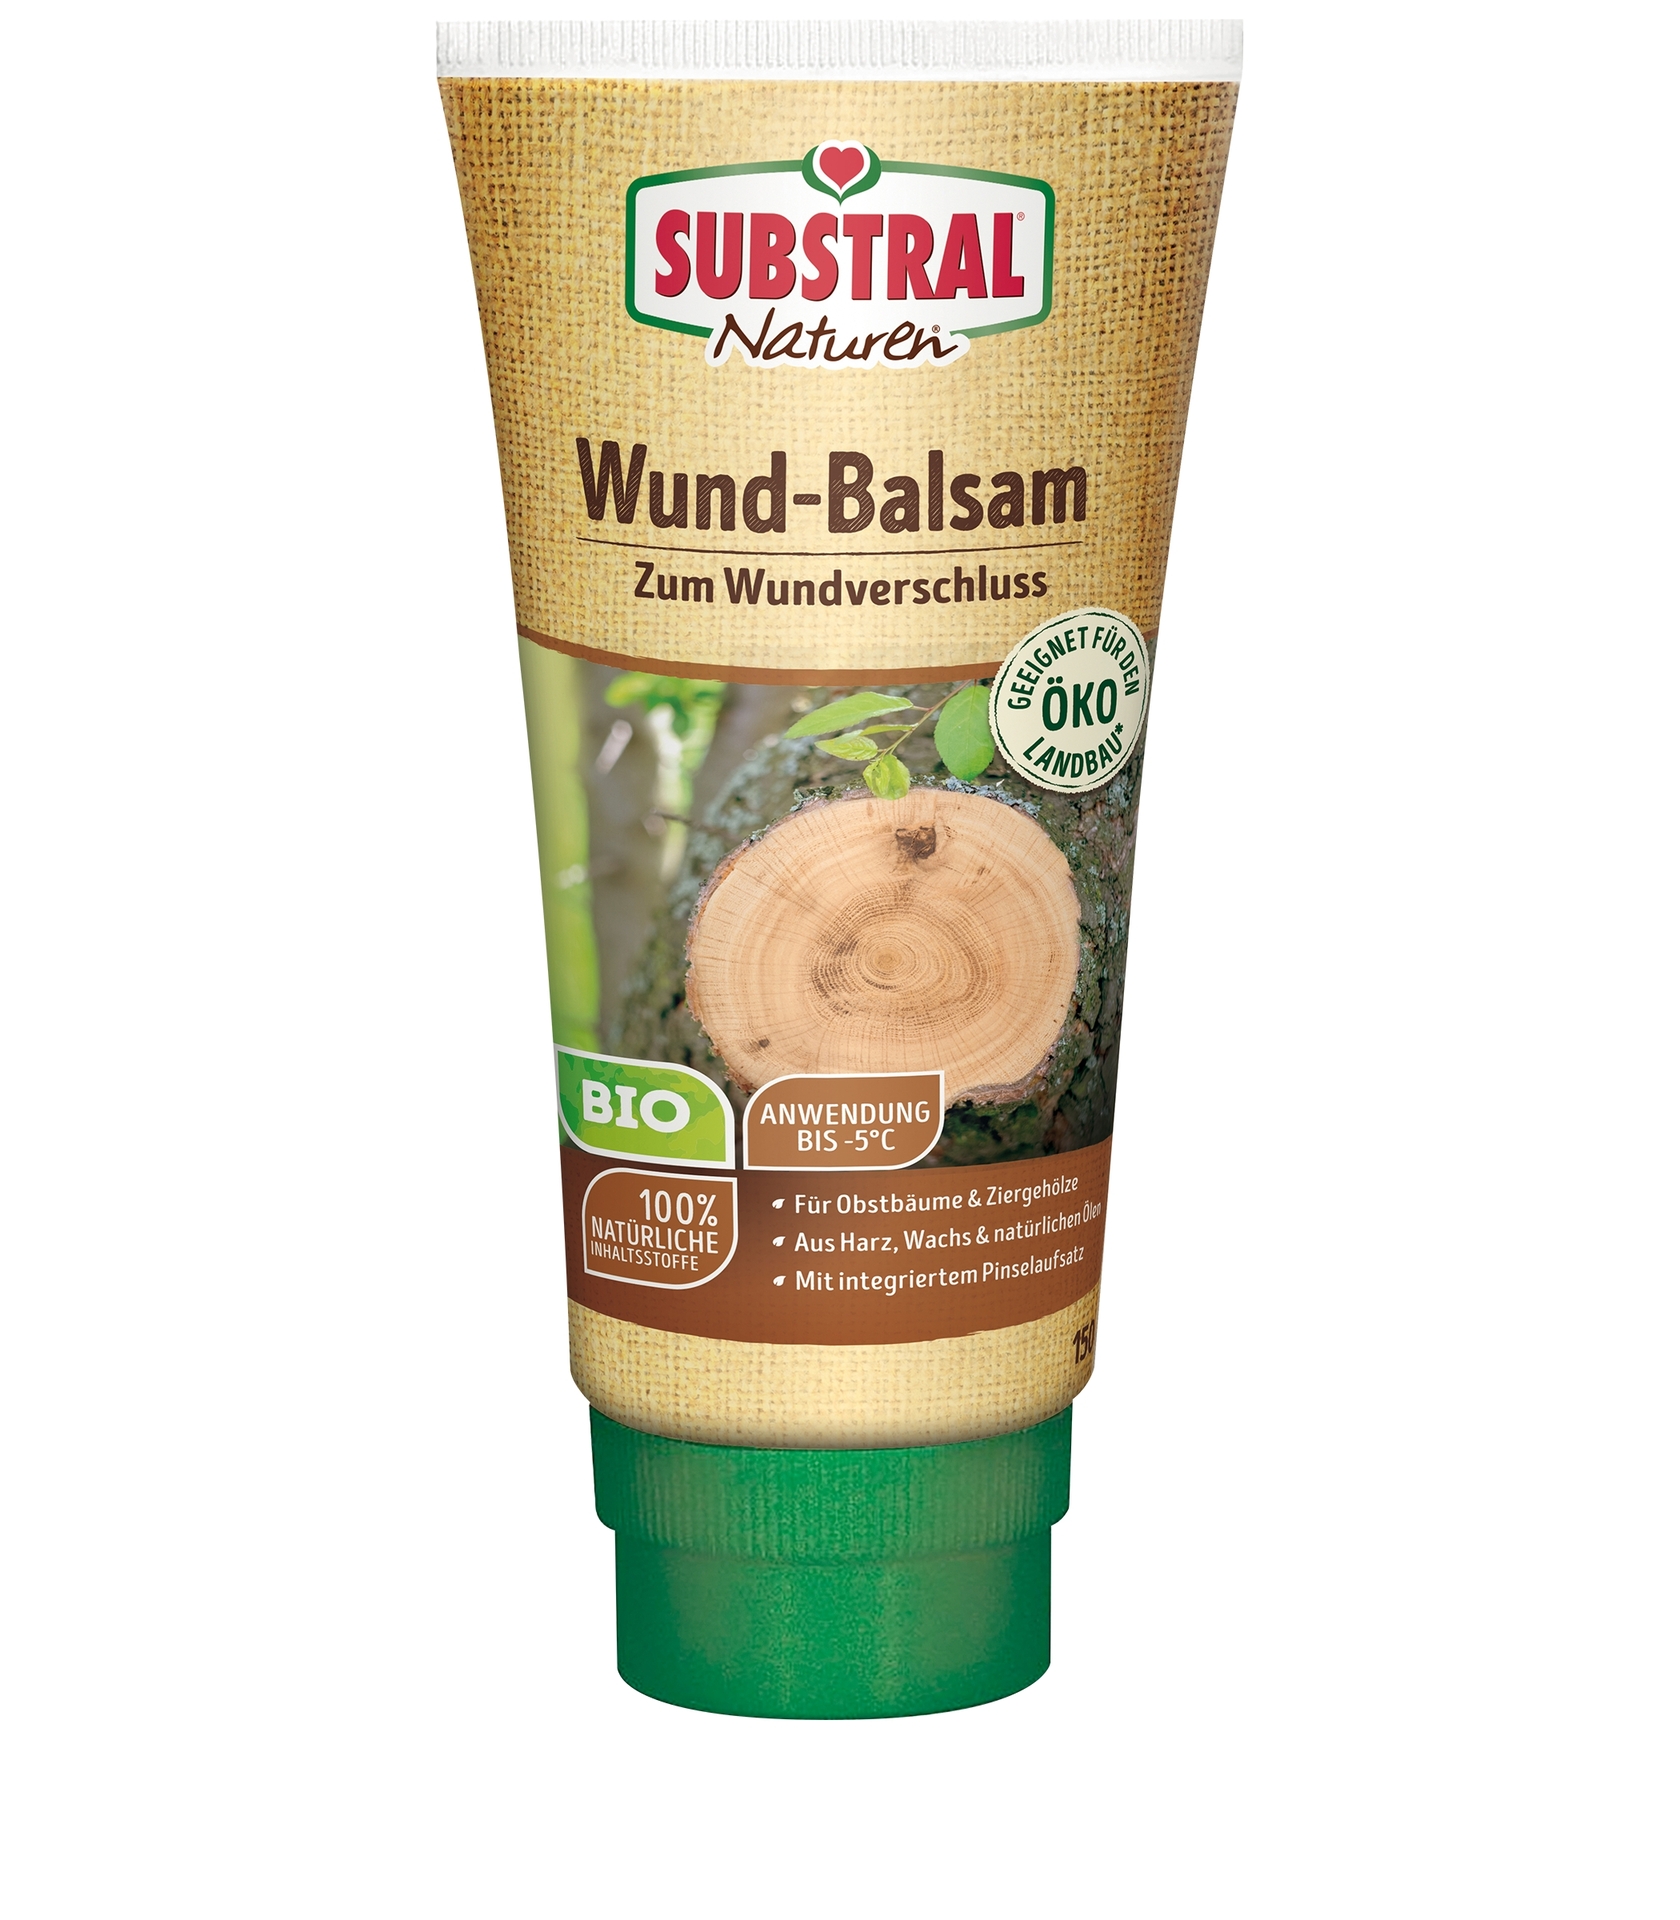 Wund-Balsam